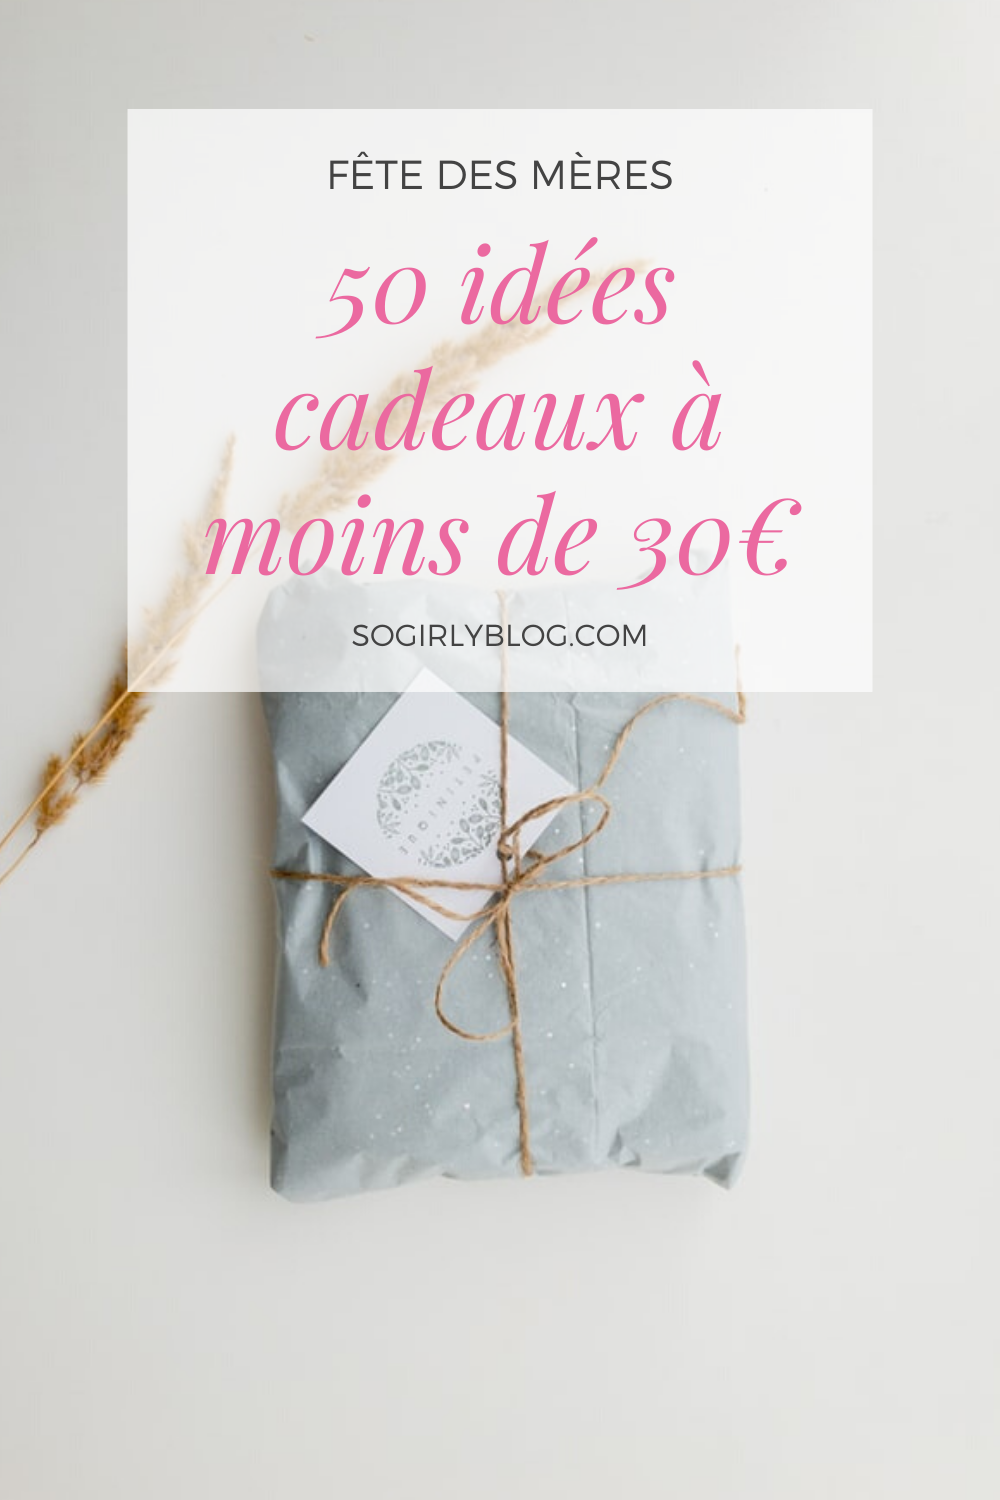 15 idées de cadeaux (à moins de 30 euros) à offrir pour la fête des mères